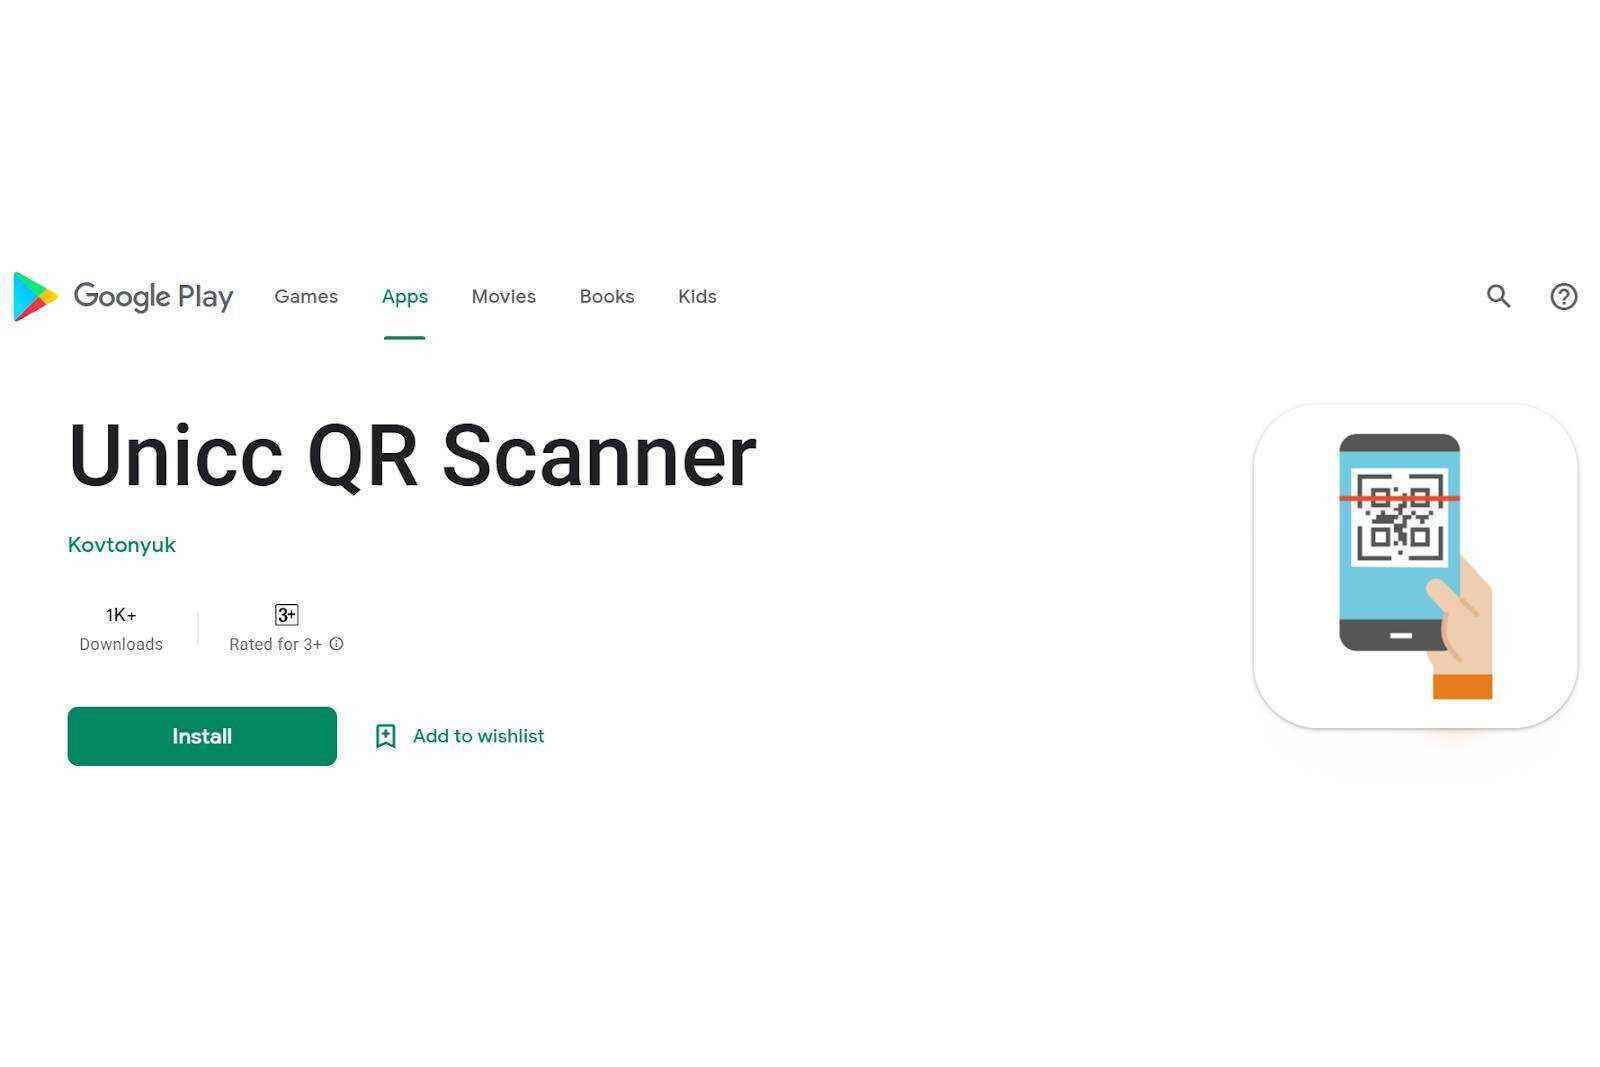 Unicc-QR-Scanner mit Coper-Malware im Play Store – Befreien Sie sich von diesen Apps mit über 300.000 Installationen